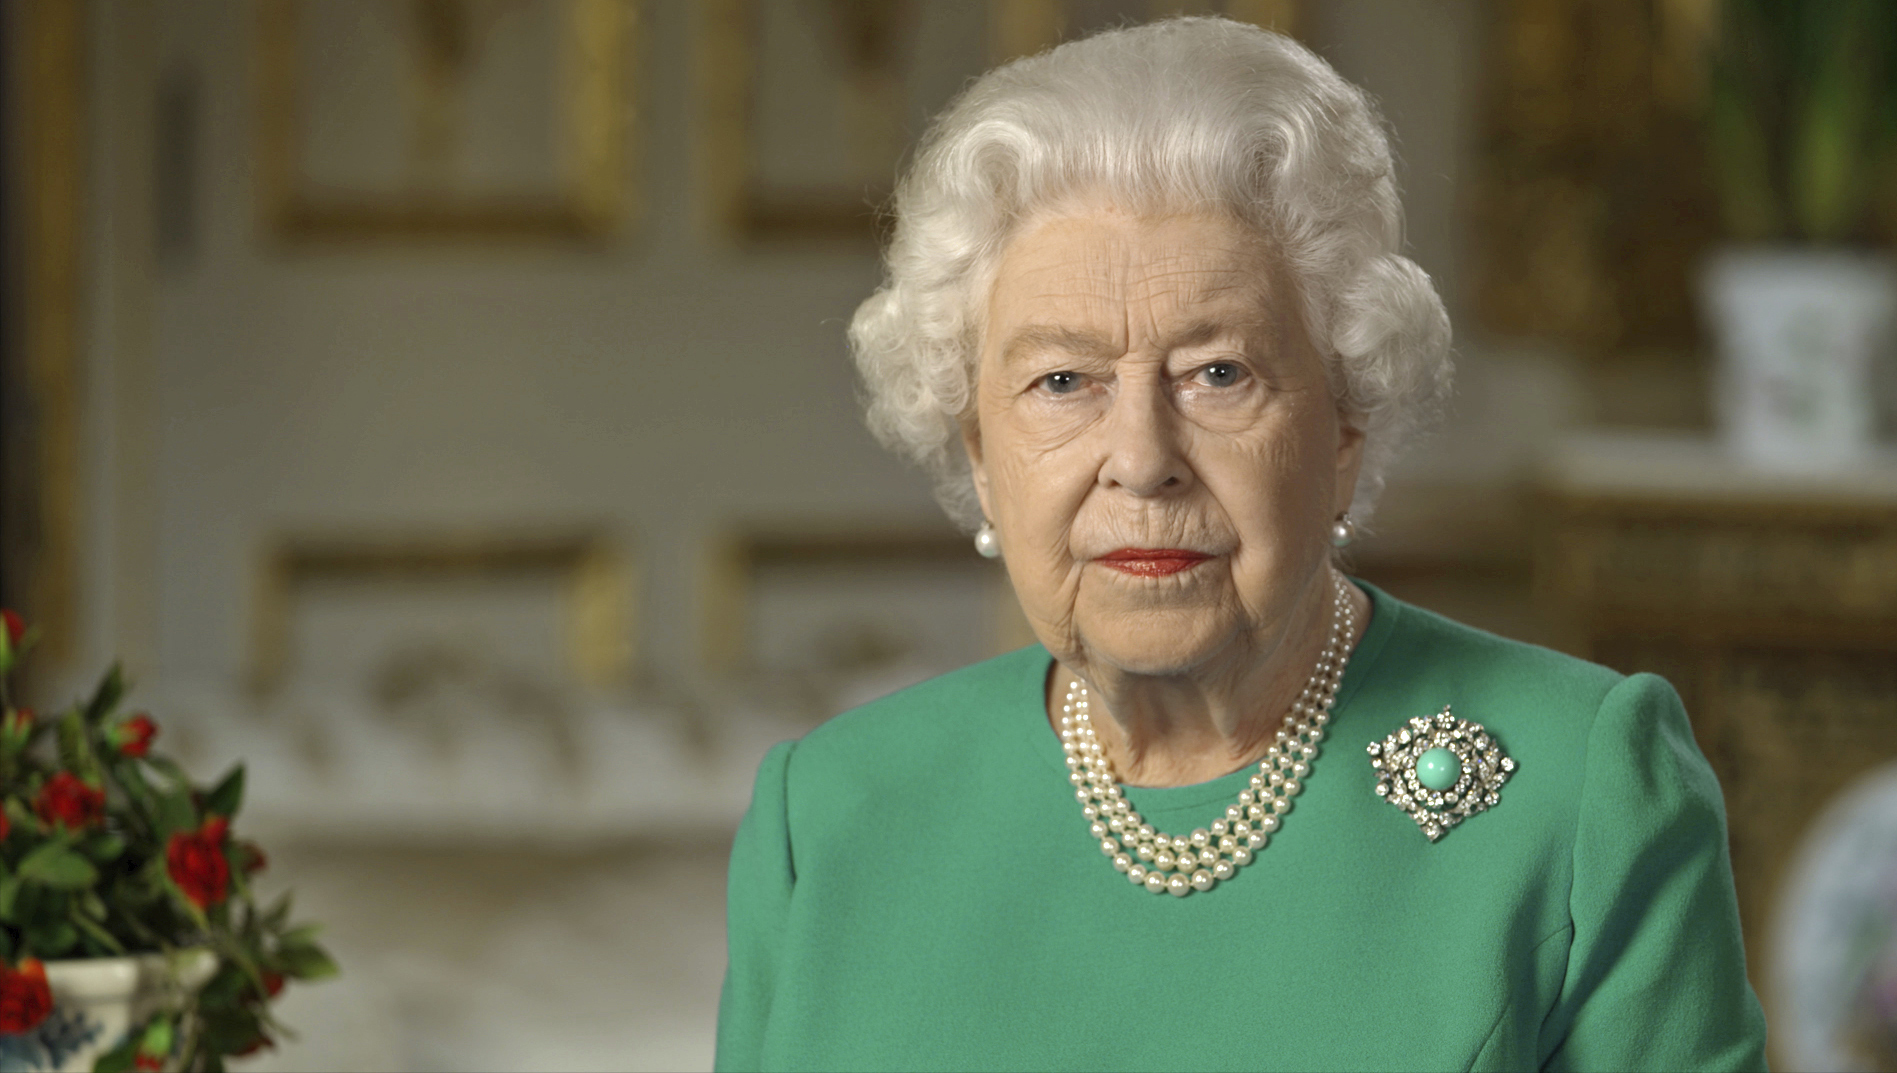 Britská kráľovná Alžbeta II. počas mimoriadneho televízneho prejavu k občanom Veľkej Británie a Spoločenstva národov (Commonwealth), v ktorom sa venovala pandémii nového koronavírusu vo Windsore v nedeľu 5. apríla 2020. Kráľovná Alžbeta II vyzvala Britov, aby sa postavili k výzve pandémie koronavírusa a boli disciplinovaní v týchto čoraz náročnejších časoch.